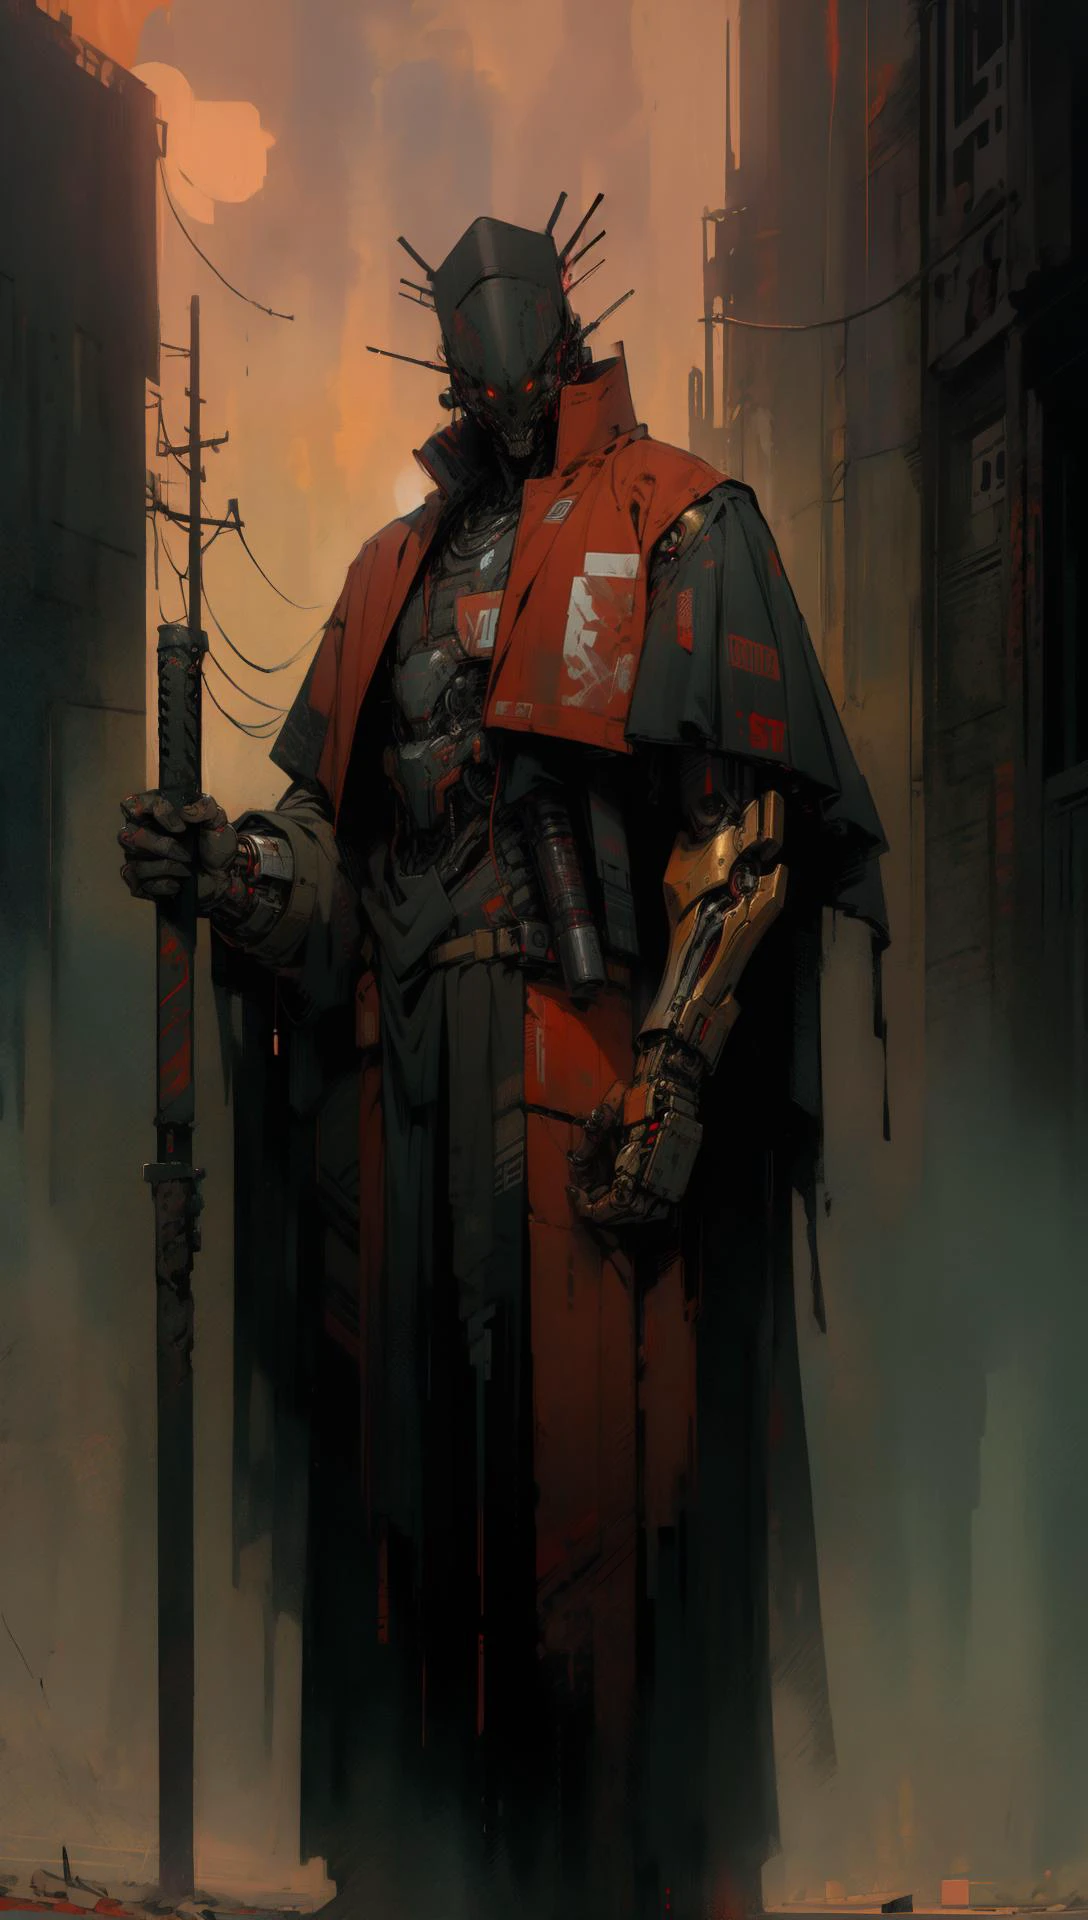 derpd, Asesino cyborg letal con túnica y armadura., Peligro, Cielo Rojo,despues del Apocalipsis 